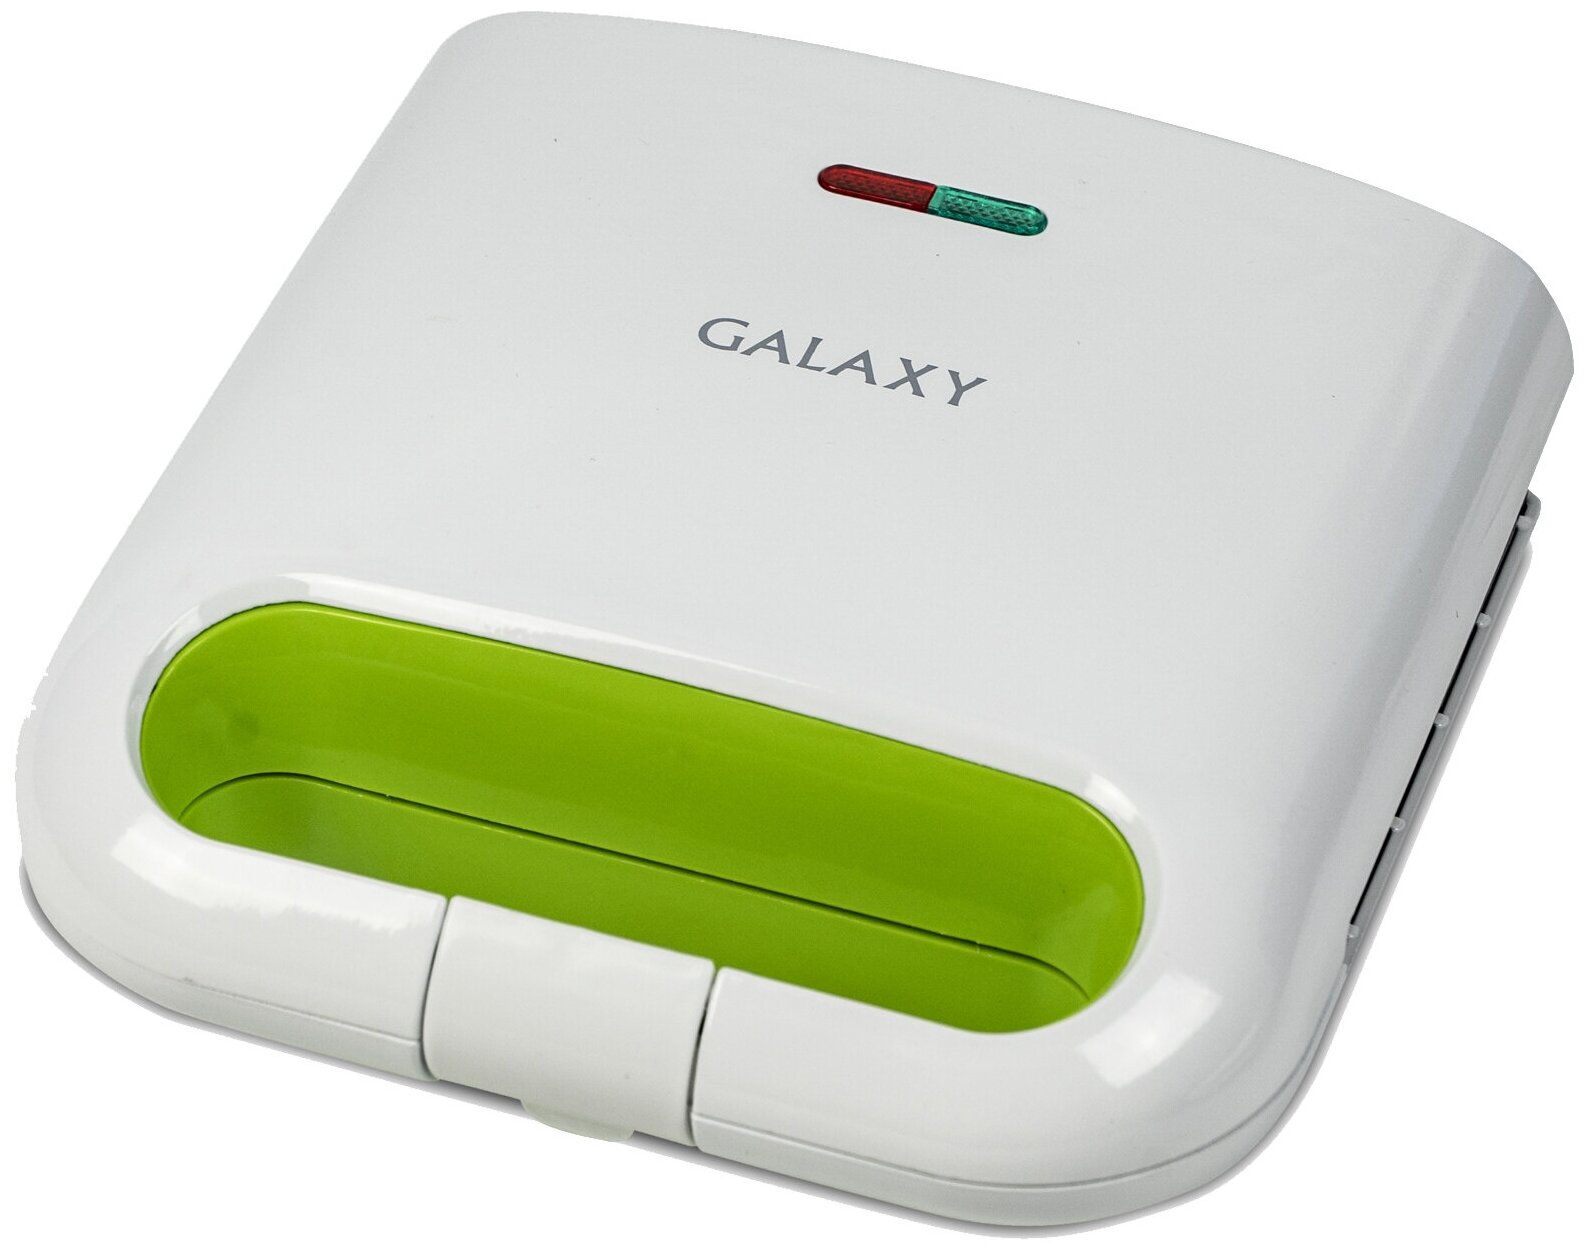 Вафельница электрическая Galaxy Line GL2963, 800 Вт, белый, зеленый